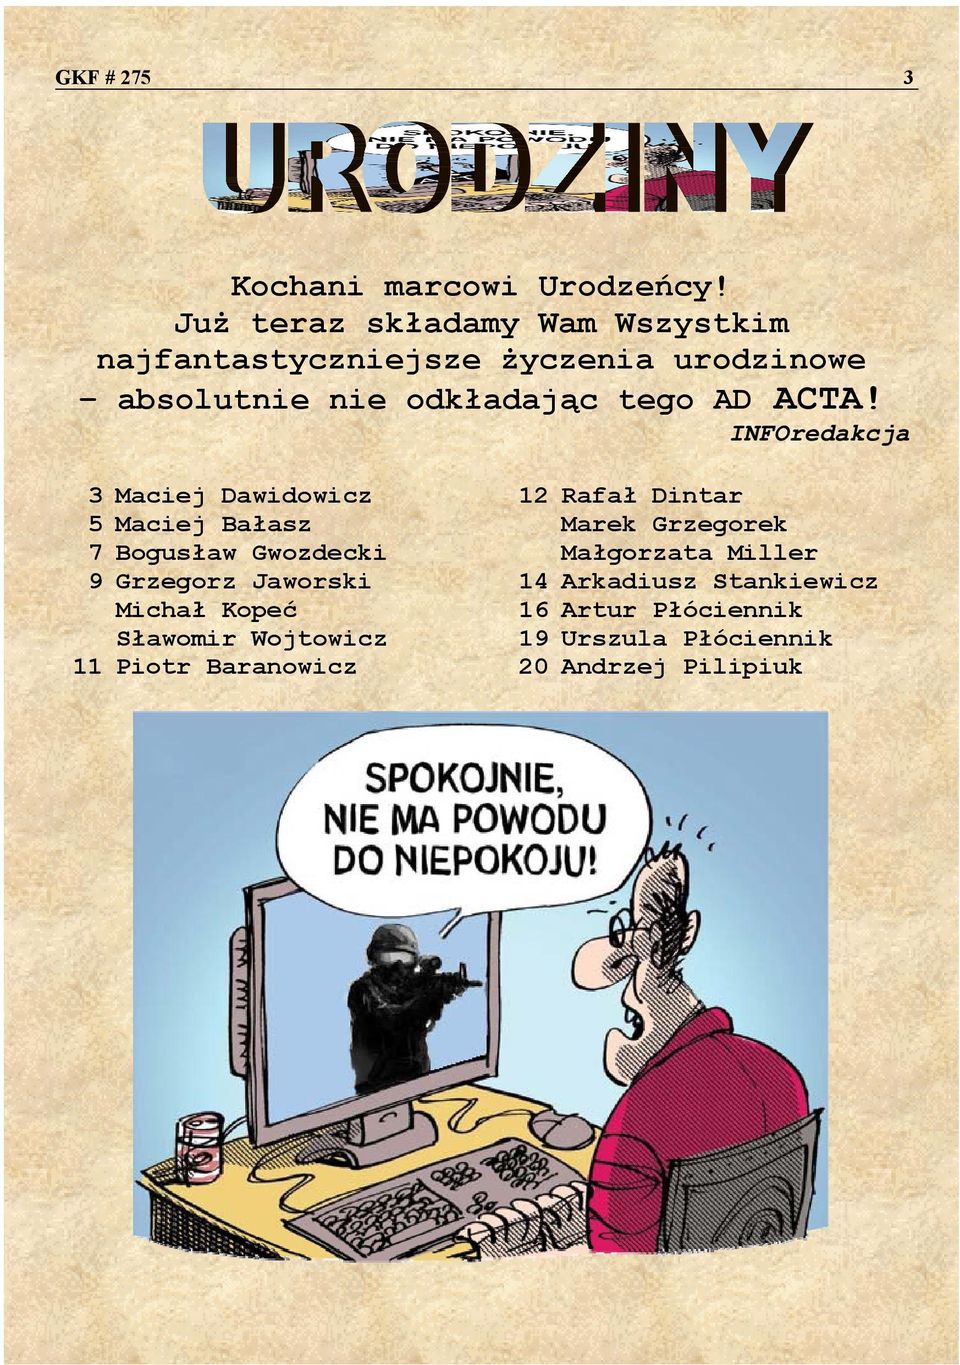 ACTA! INFOredakcja 3 Maciej Dawidowicz 12 Rafał Dintar 5 Maciej Bałasz Marek Grzegorek 7 Bogusław Gwozdecki